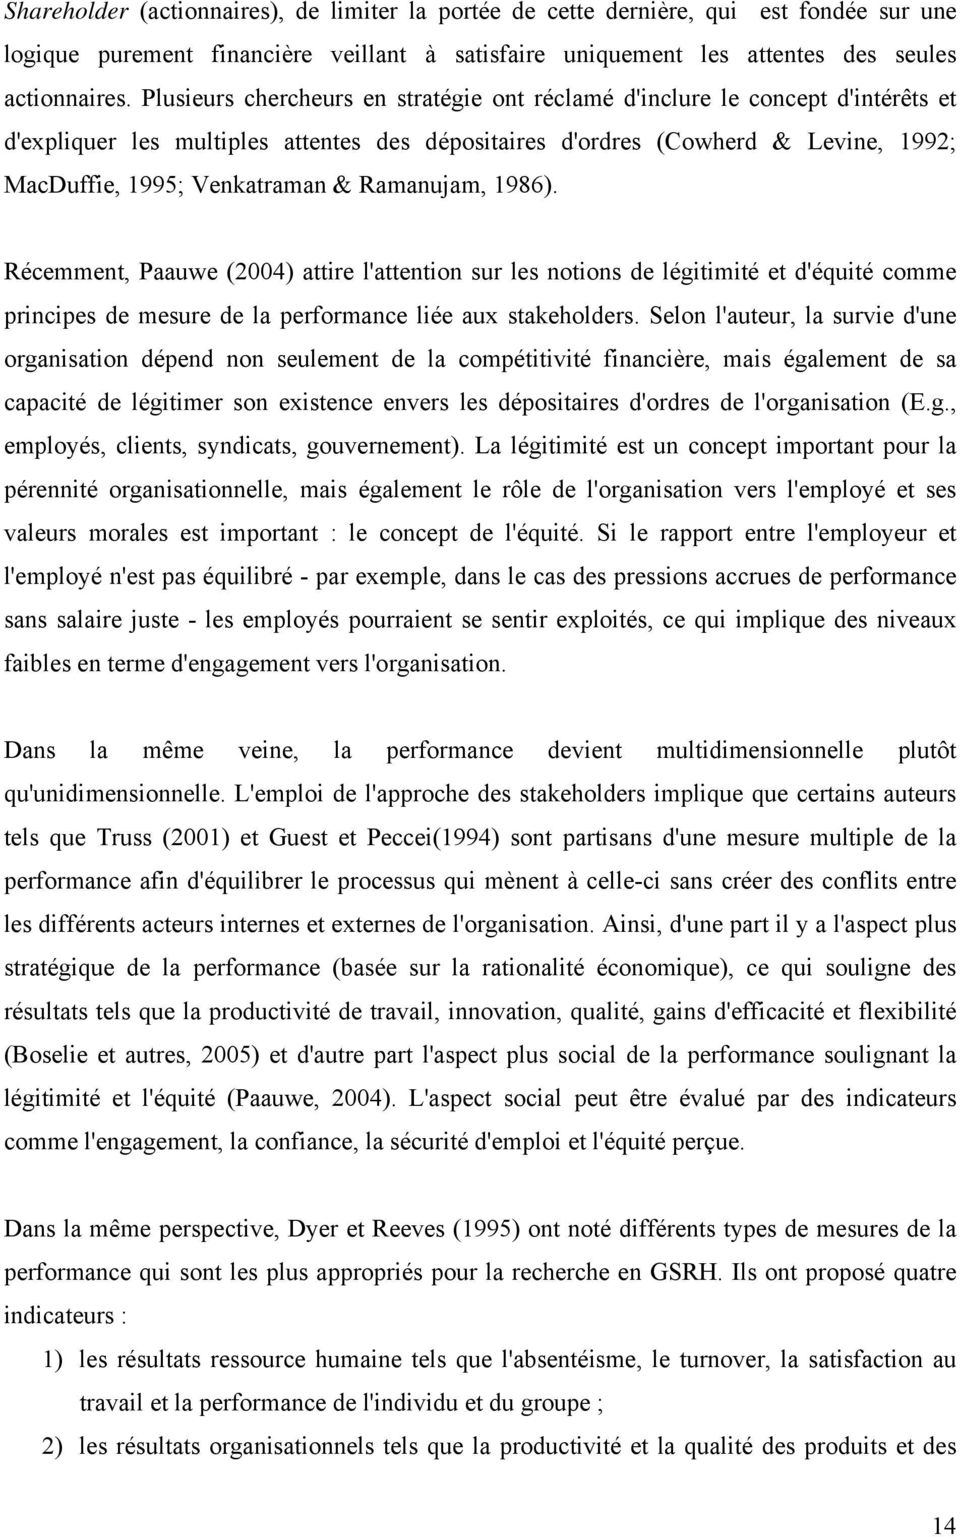 Ramanujam, 1986). Récemment, Paauwe (2004) attire l'attention sur les notions de légitimité et d'équité comme principes de mesure de la performance liée aux stakeholders.